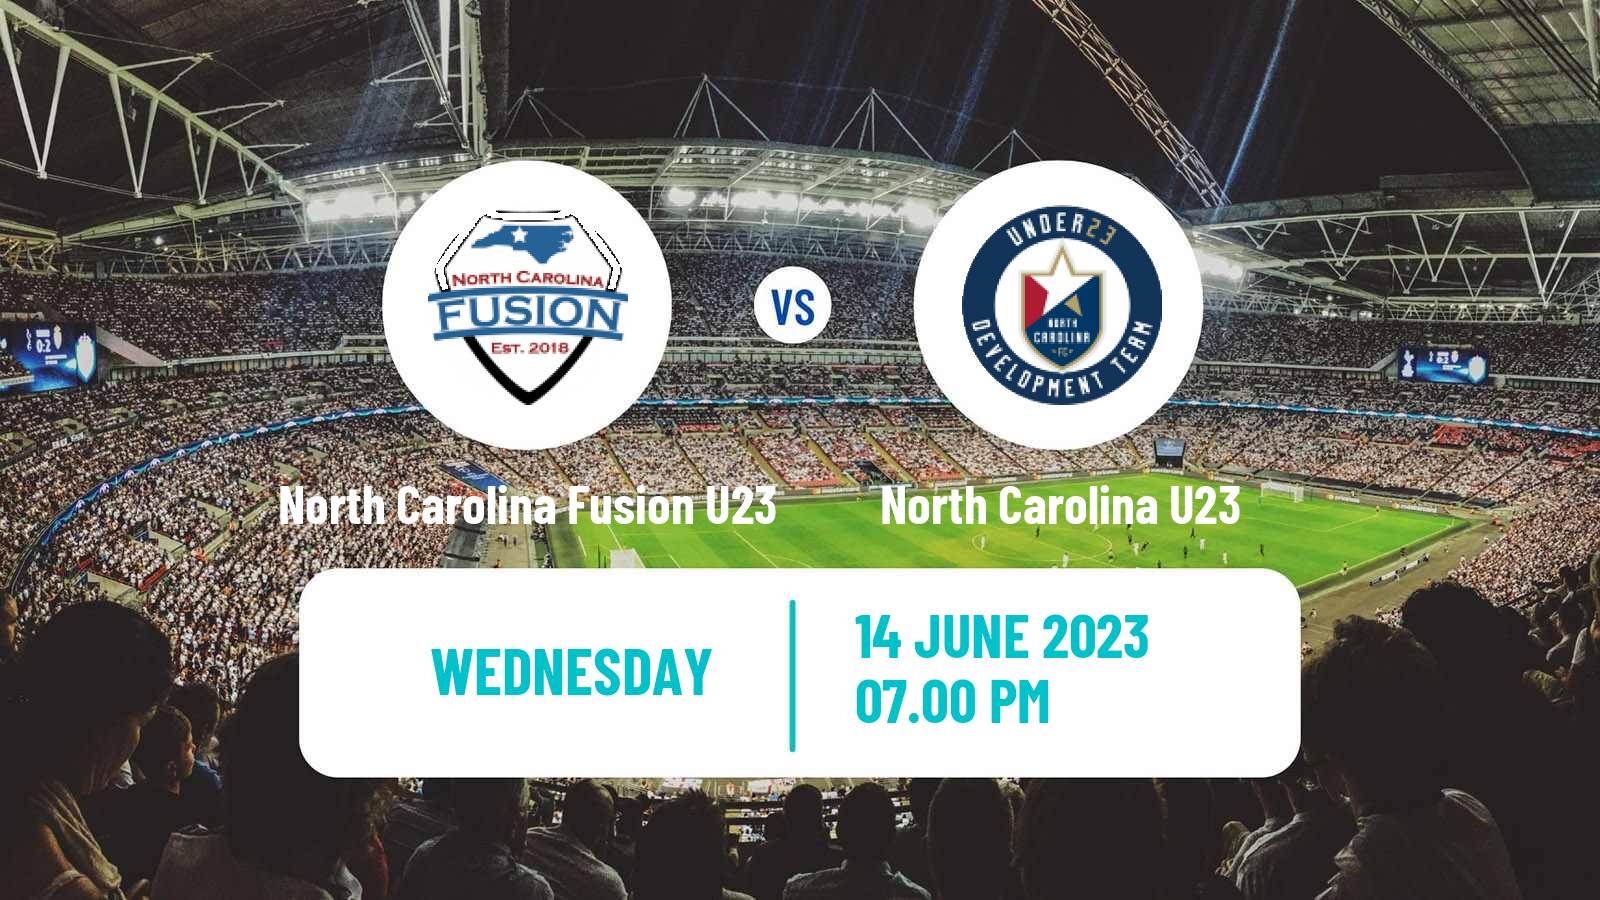 Soccer USL League Two North Carolina Fusion U23 - North Carolina U23